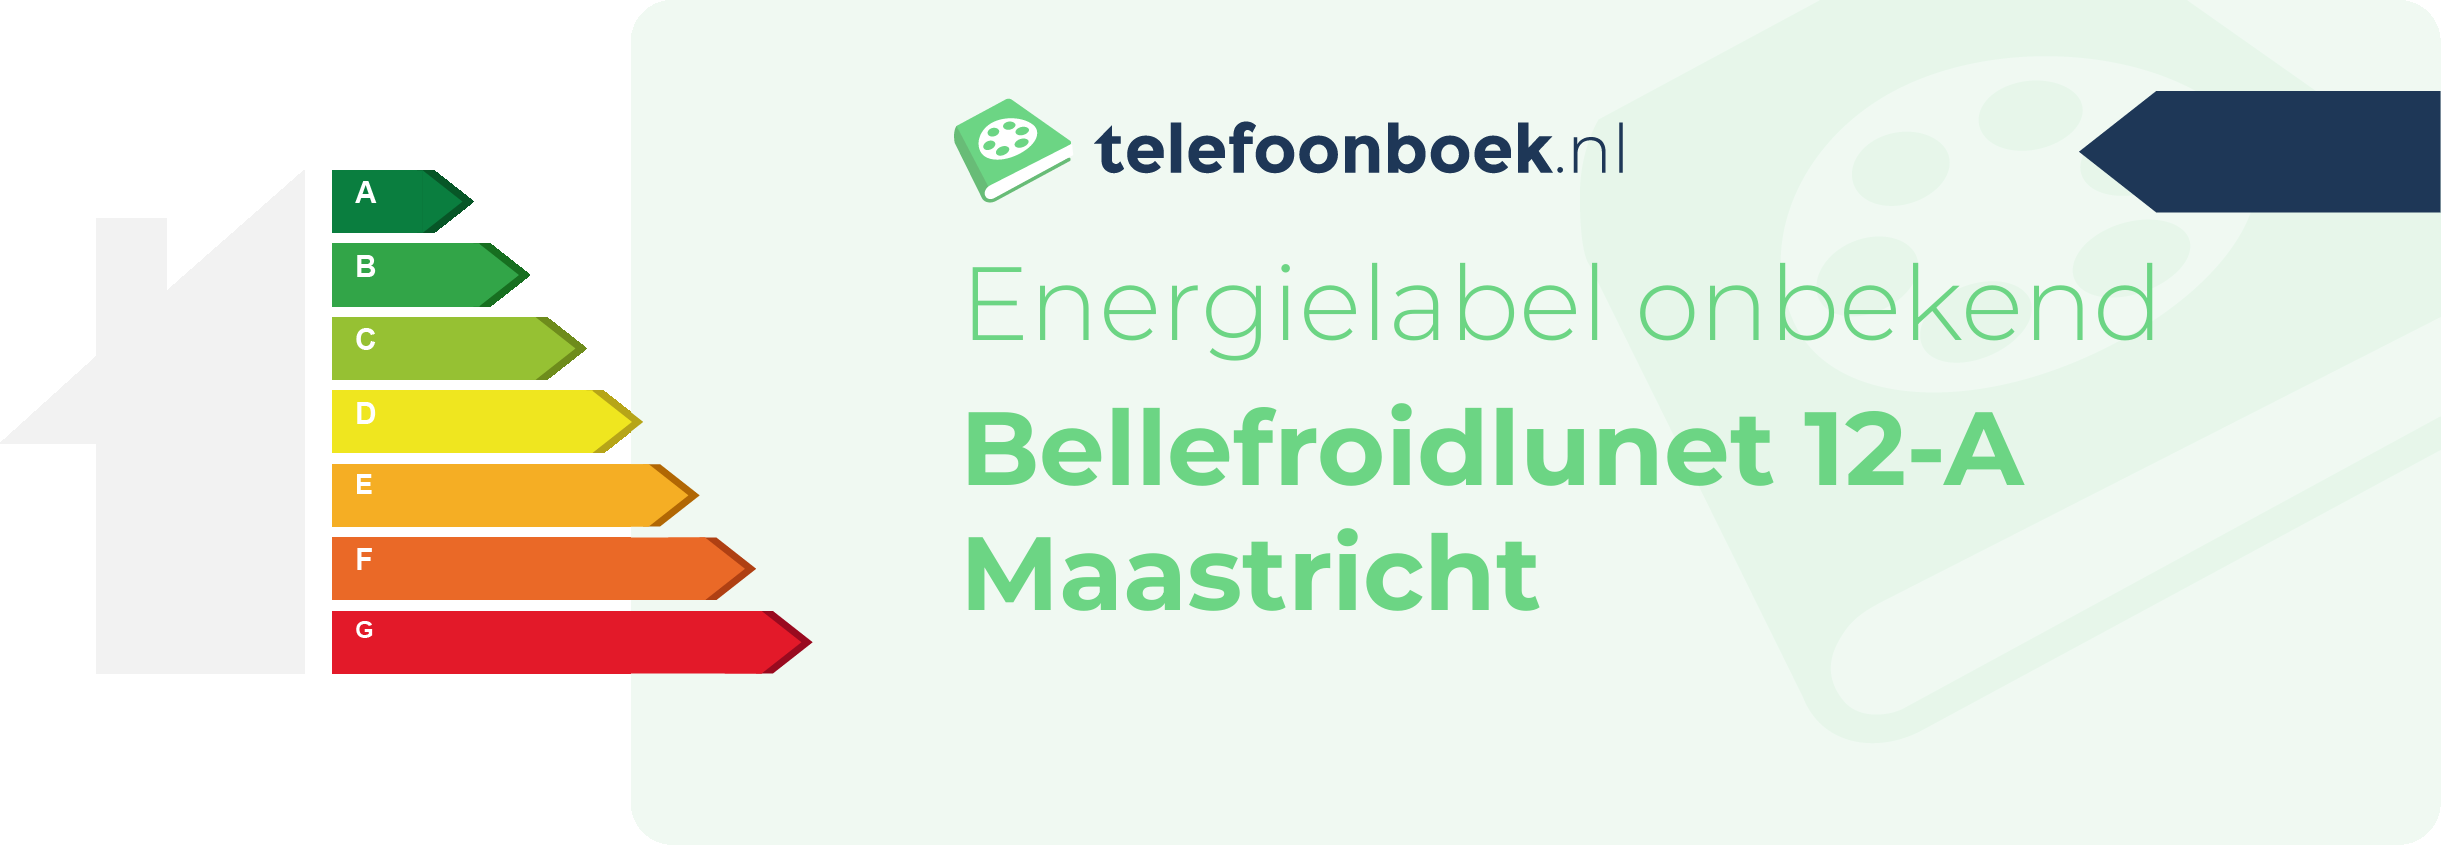 Energielabel Bellefroidlunet 12-A Maastricht